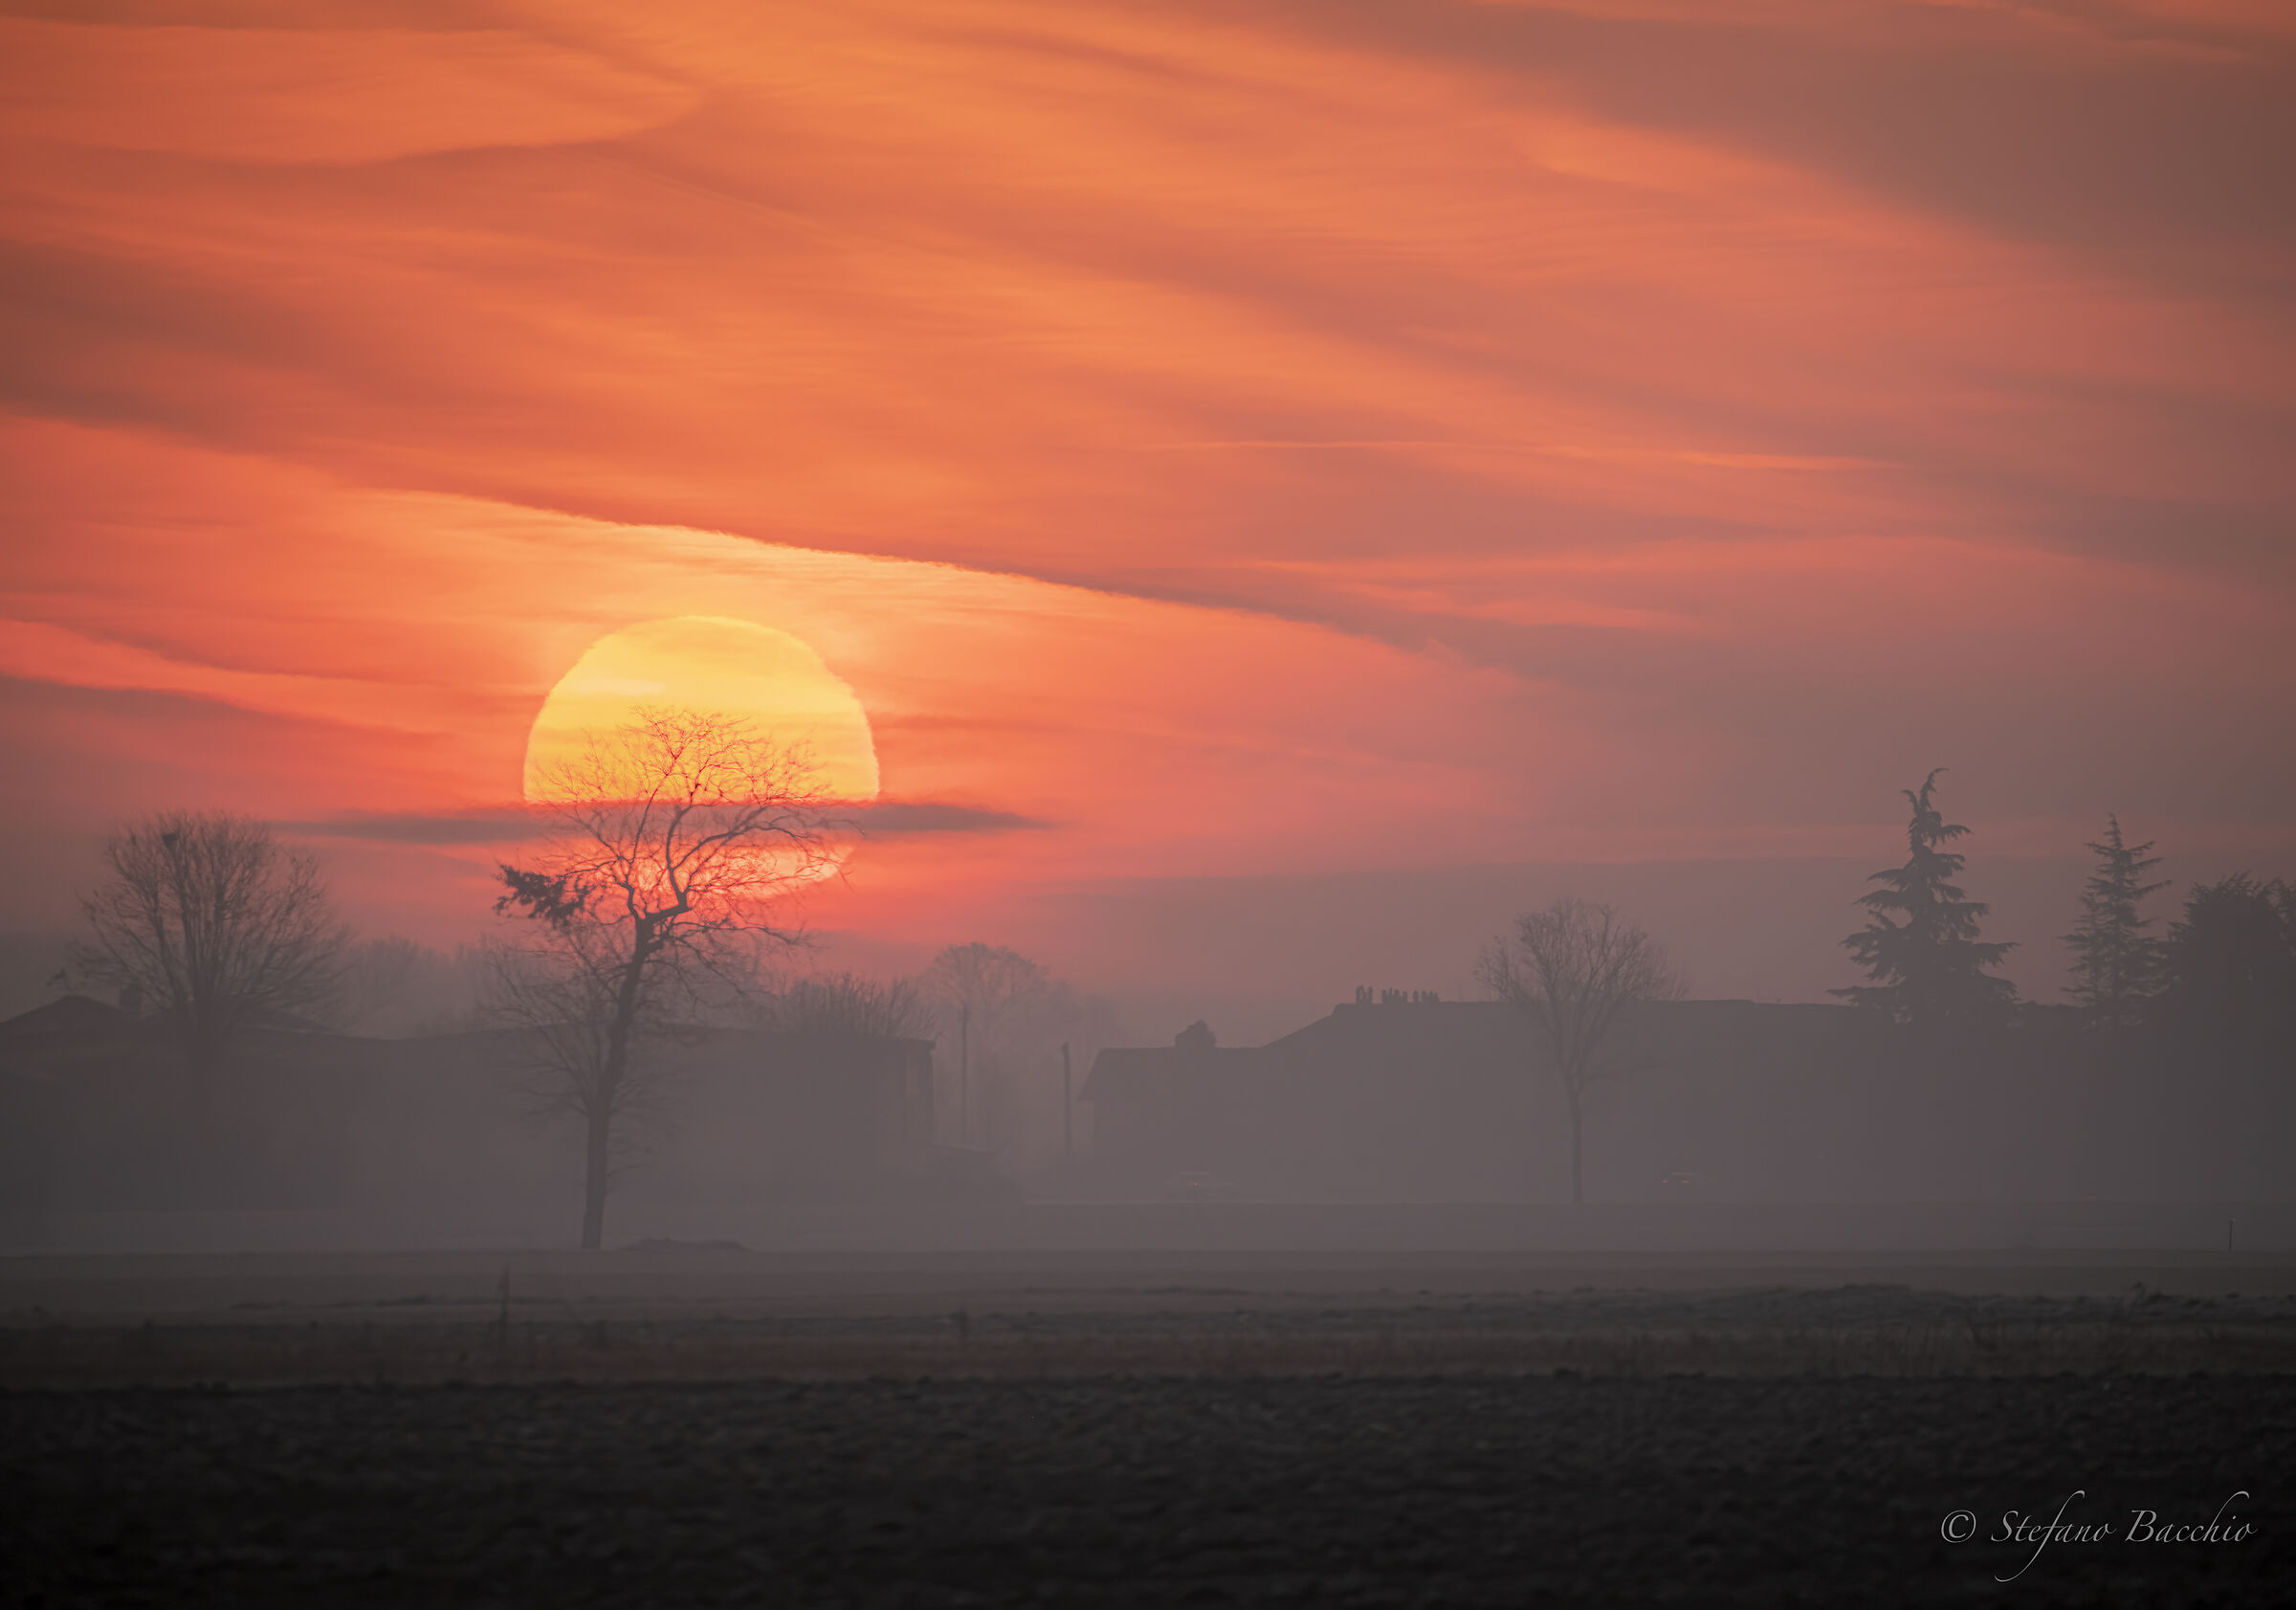 Sunrise in the lower Pavia area...